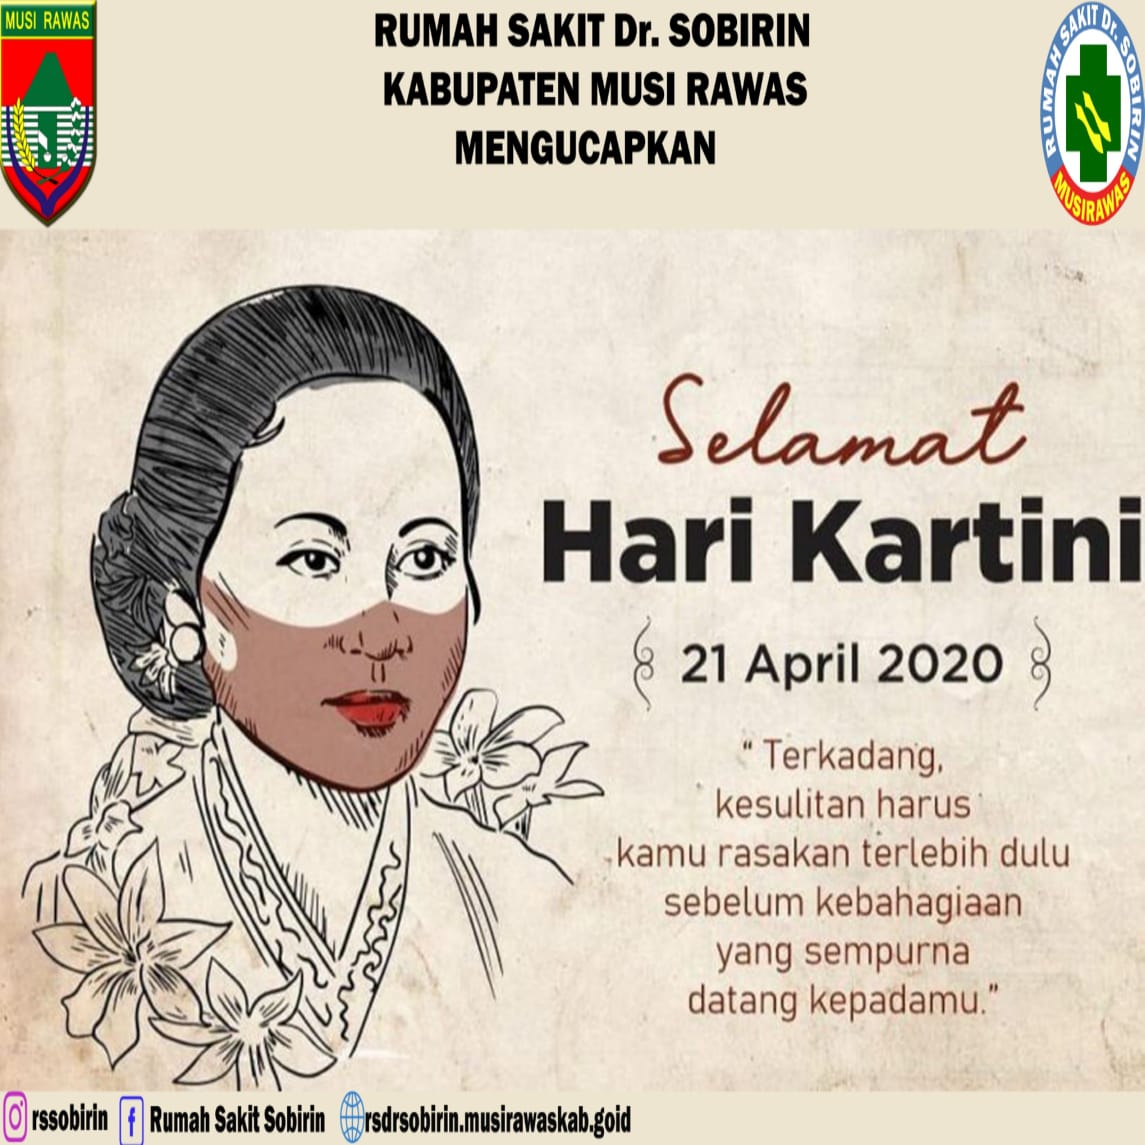 Rumah Sakit Dr. Sobirin Kabupaten Musi Rawas Mengucapkan Selamat Hari Kartini (21 April 2020) 